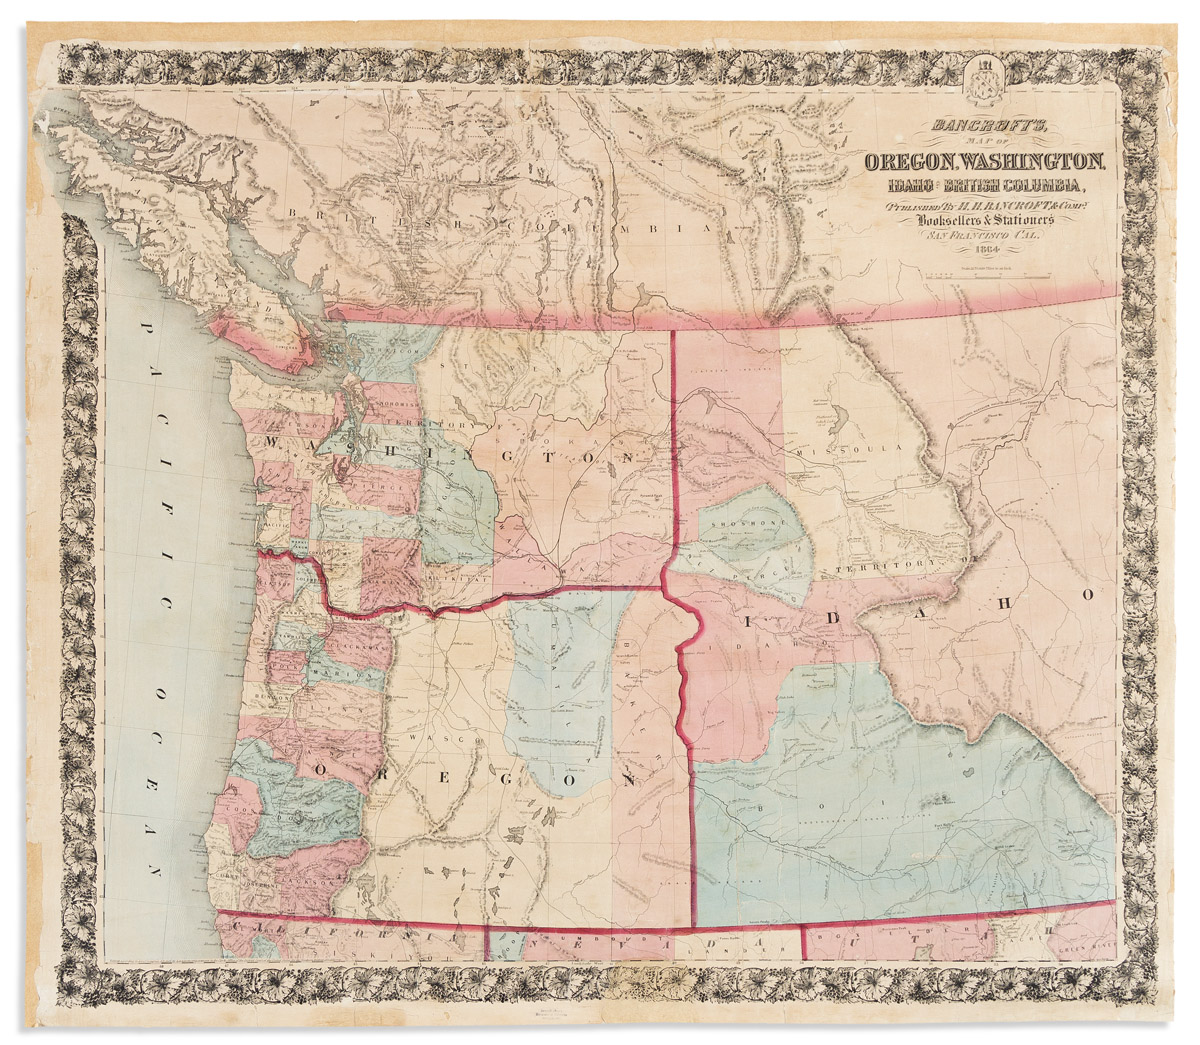 Bancroft's Map of Oregon, Washington, Idaho & British Columbia